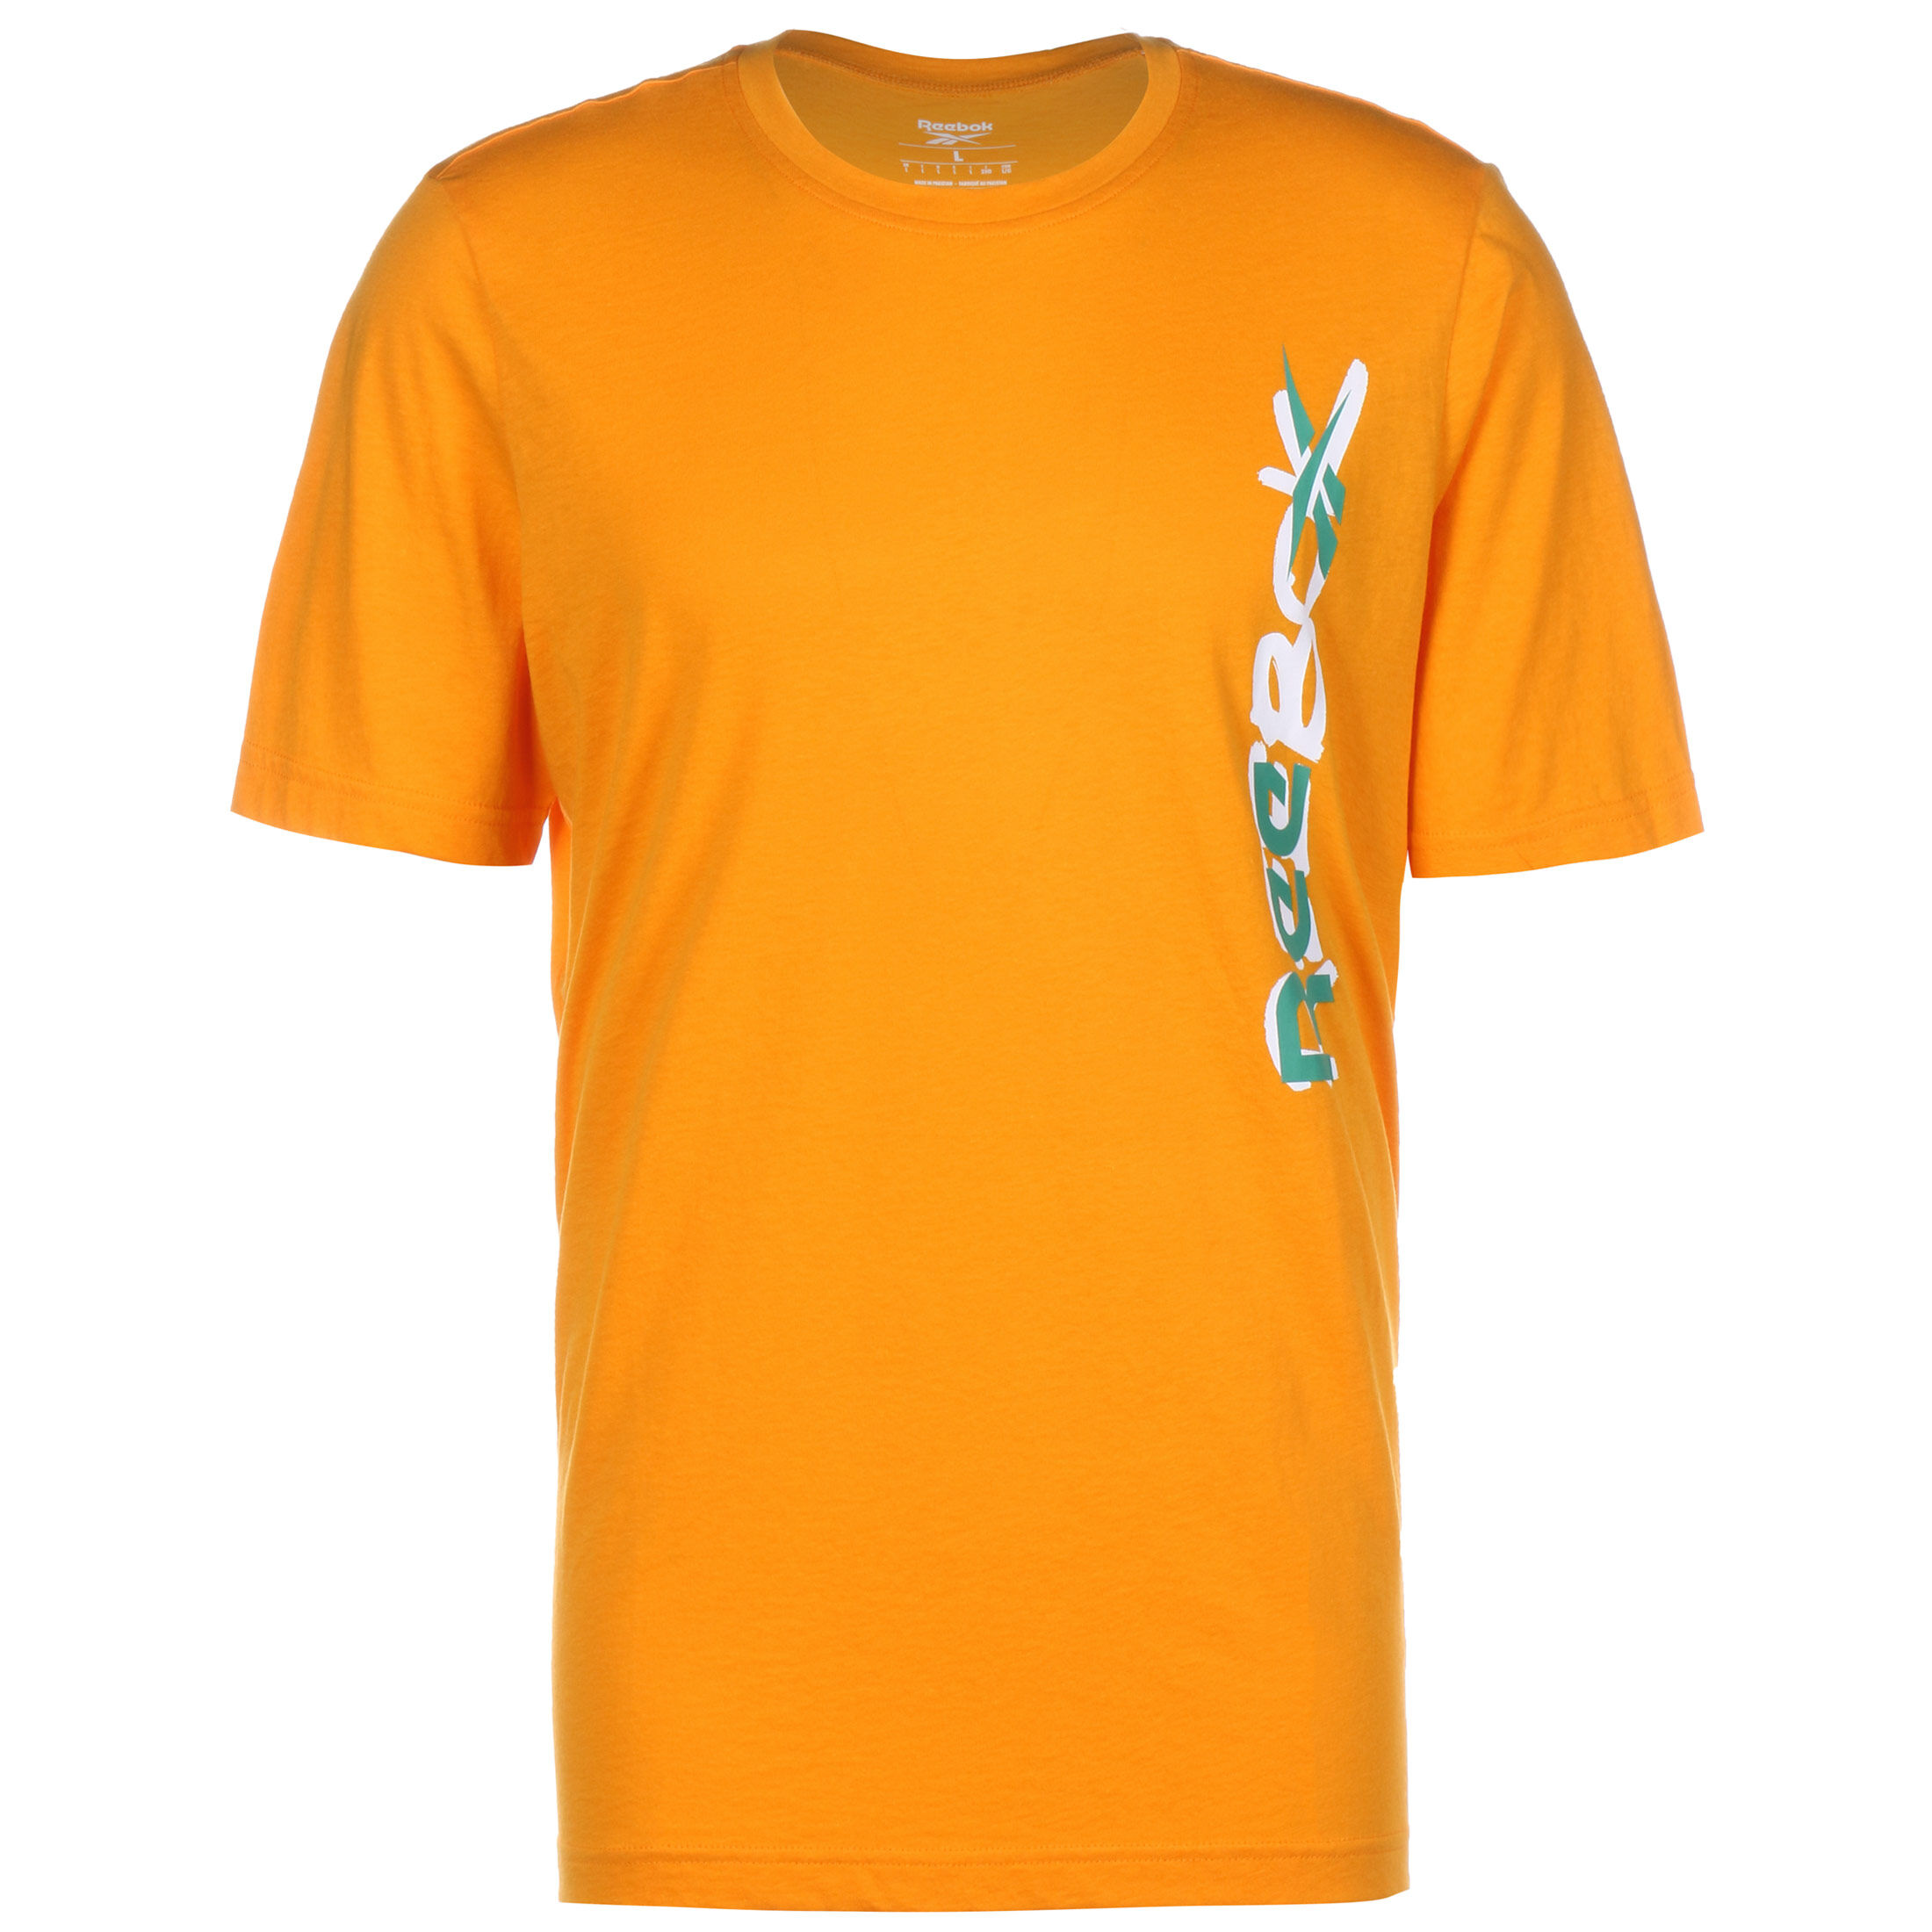 Футболка Reebok MYT, желтый футболка женская reebok myt бежевый